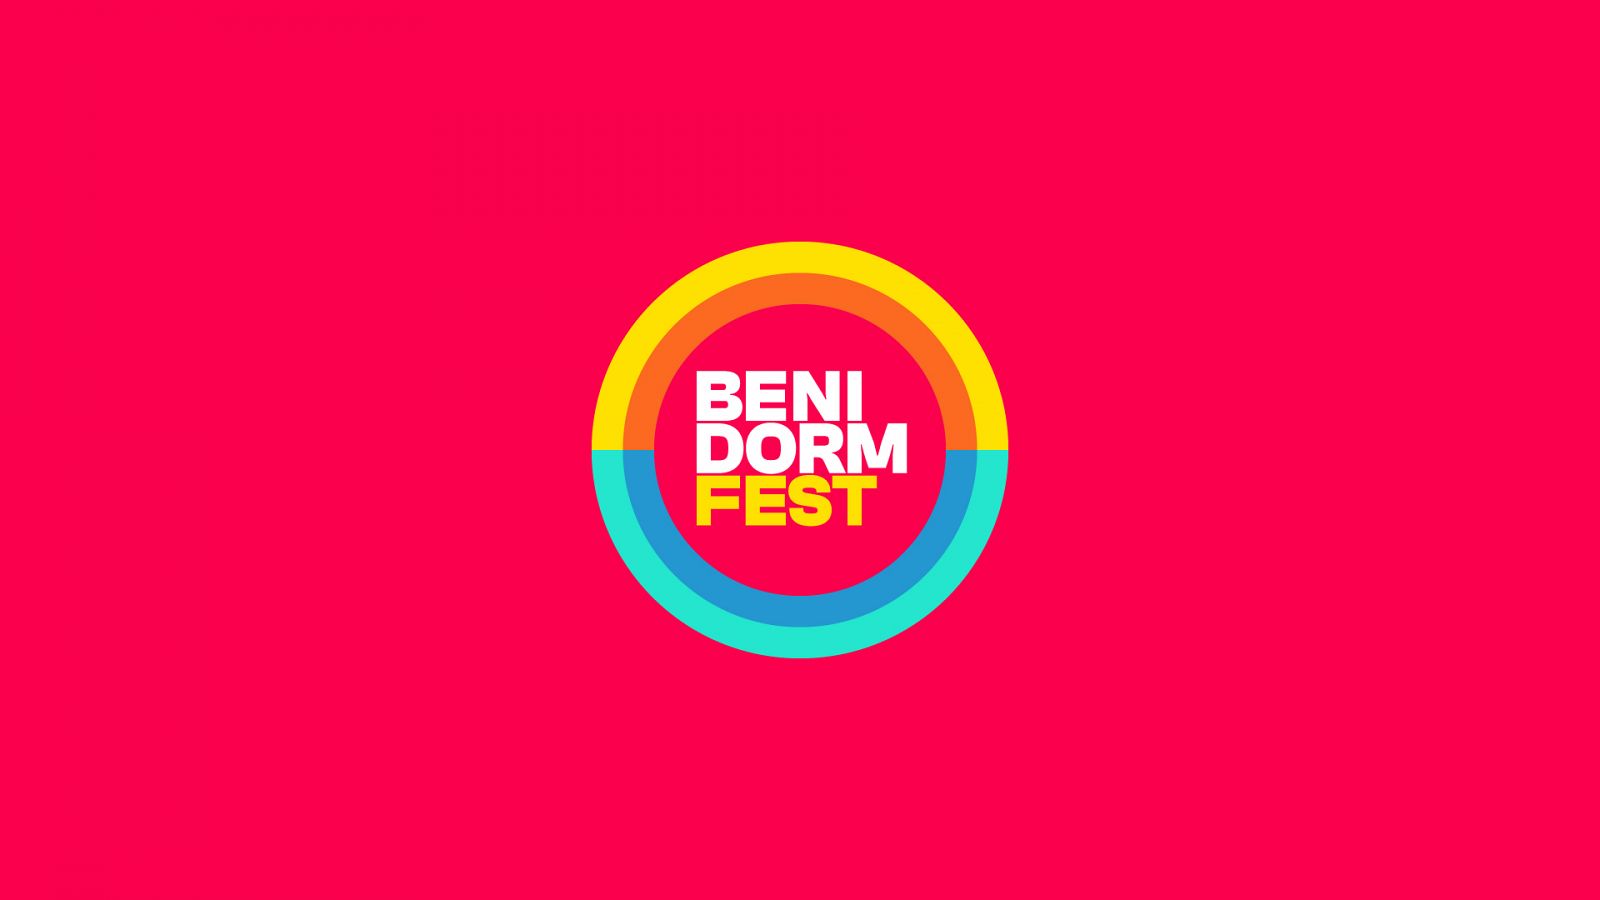 Nuevo logotipo del Benidorm Fest con el fondo rojo